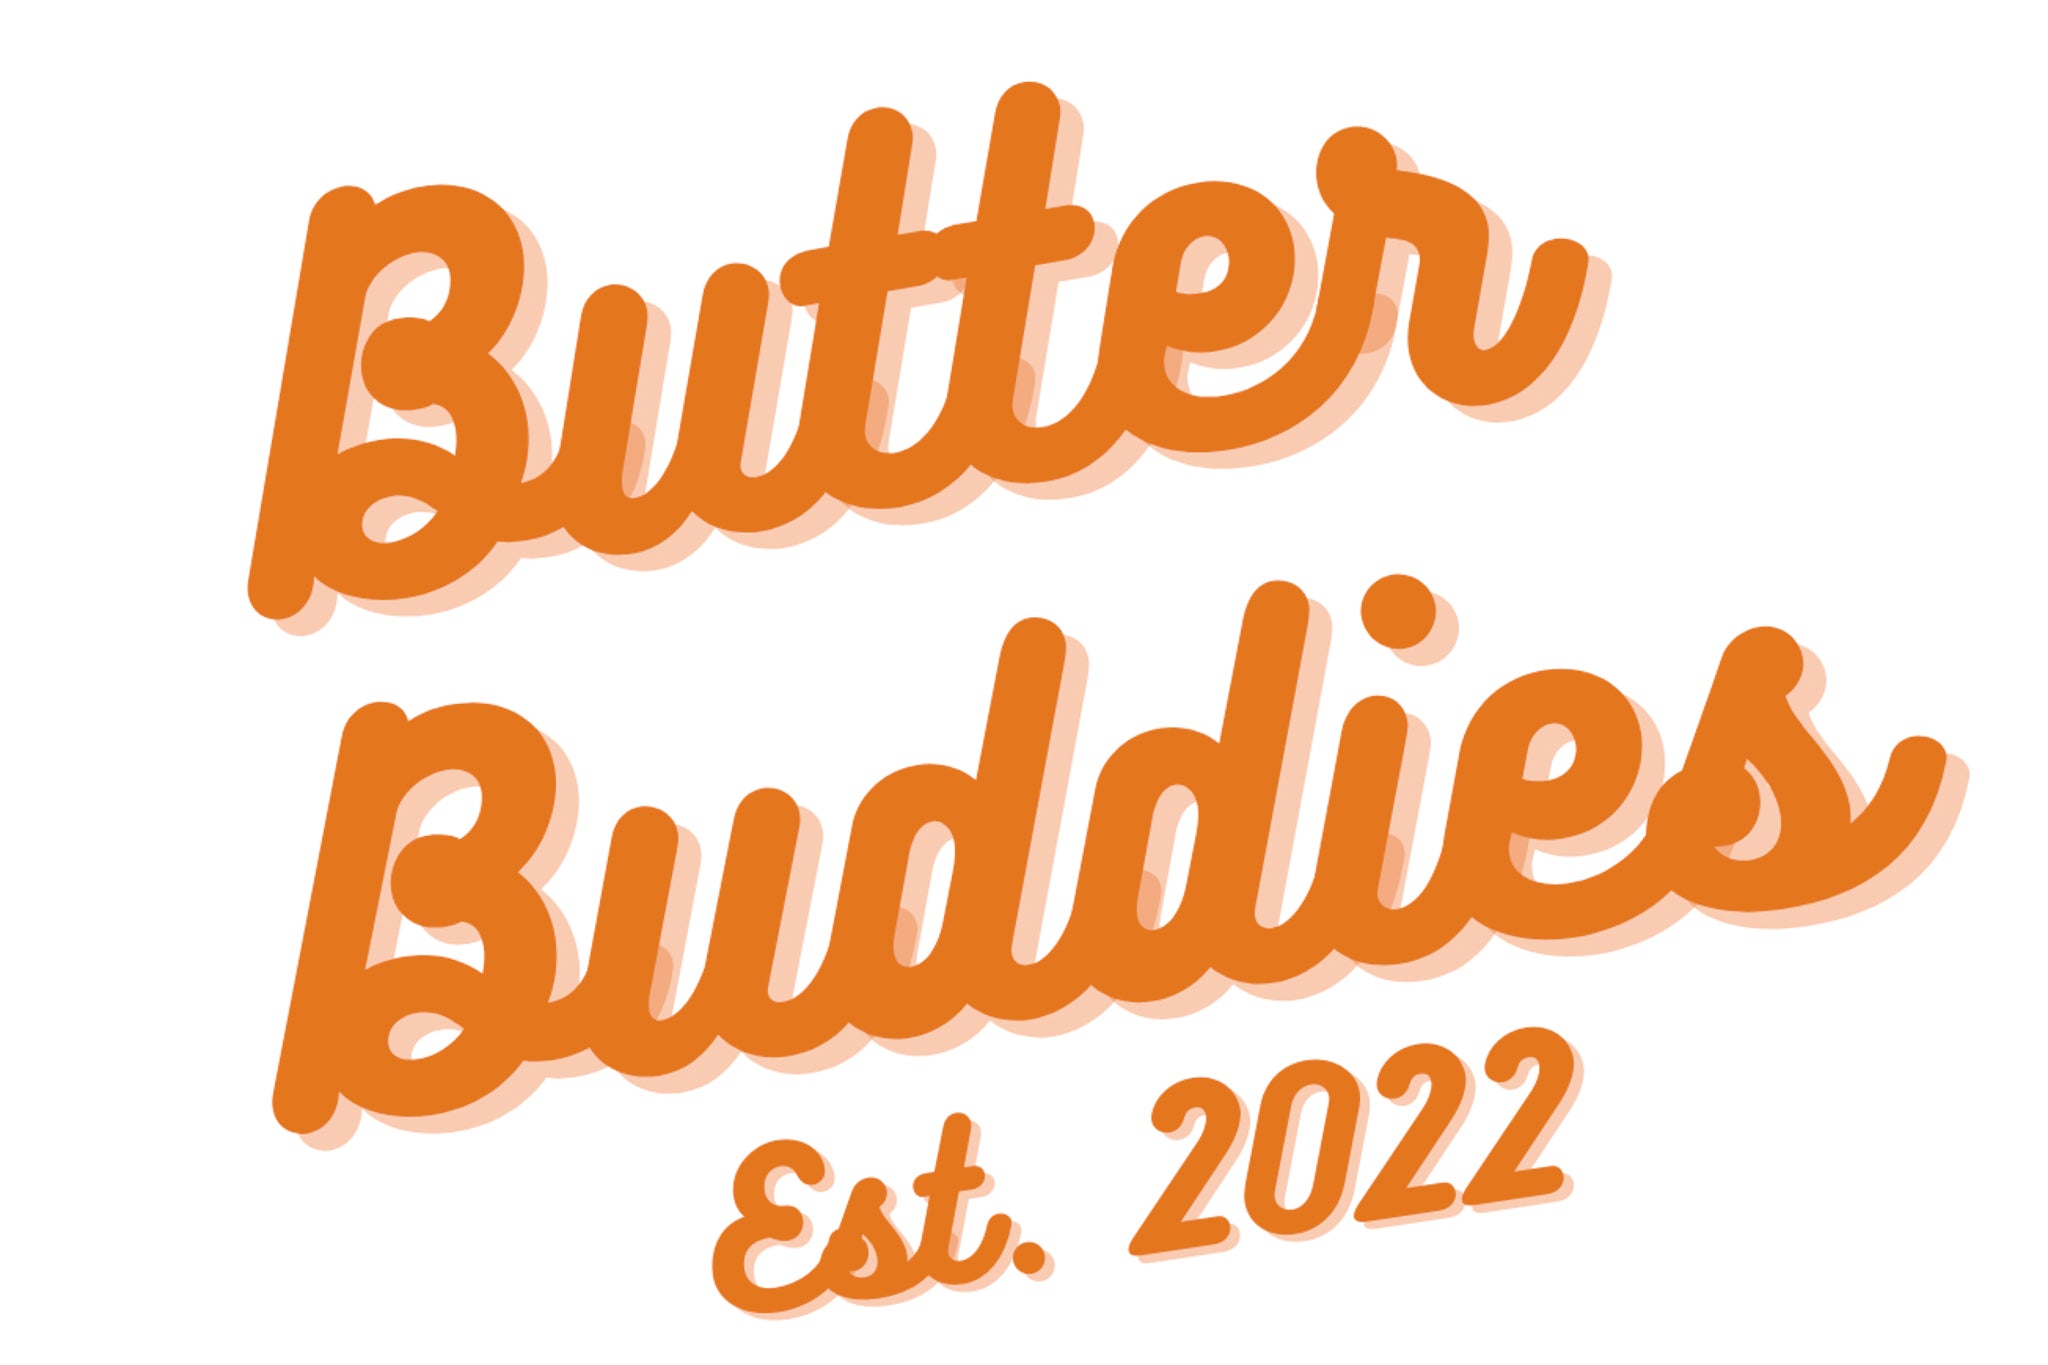 ButterBuddies